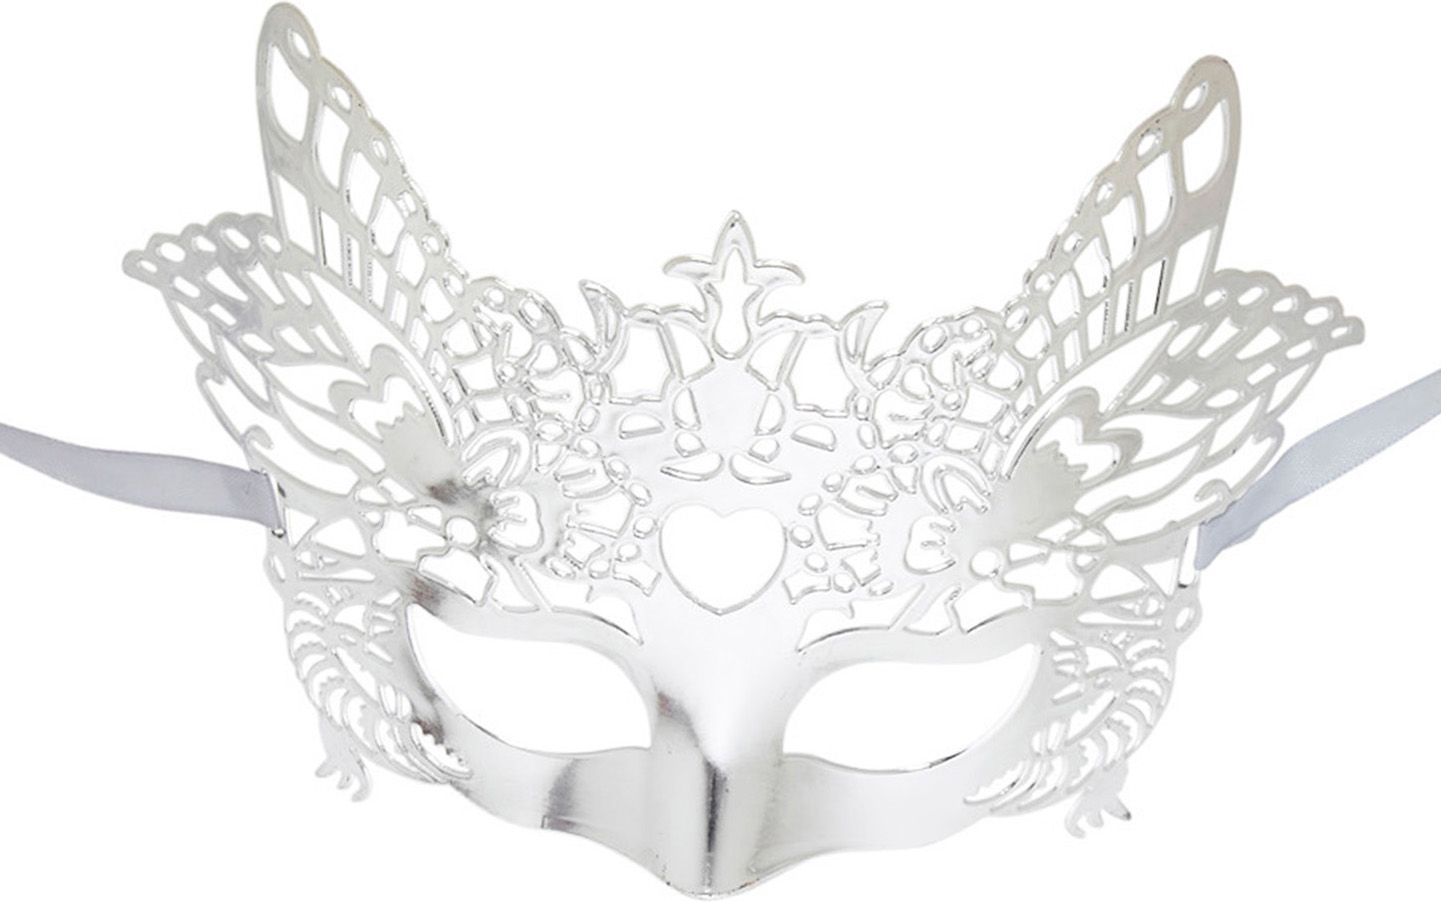 Venetiaans masker zilver